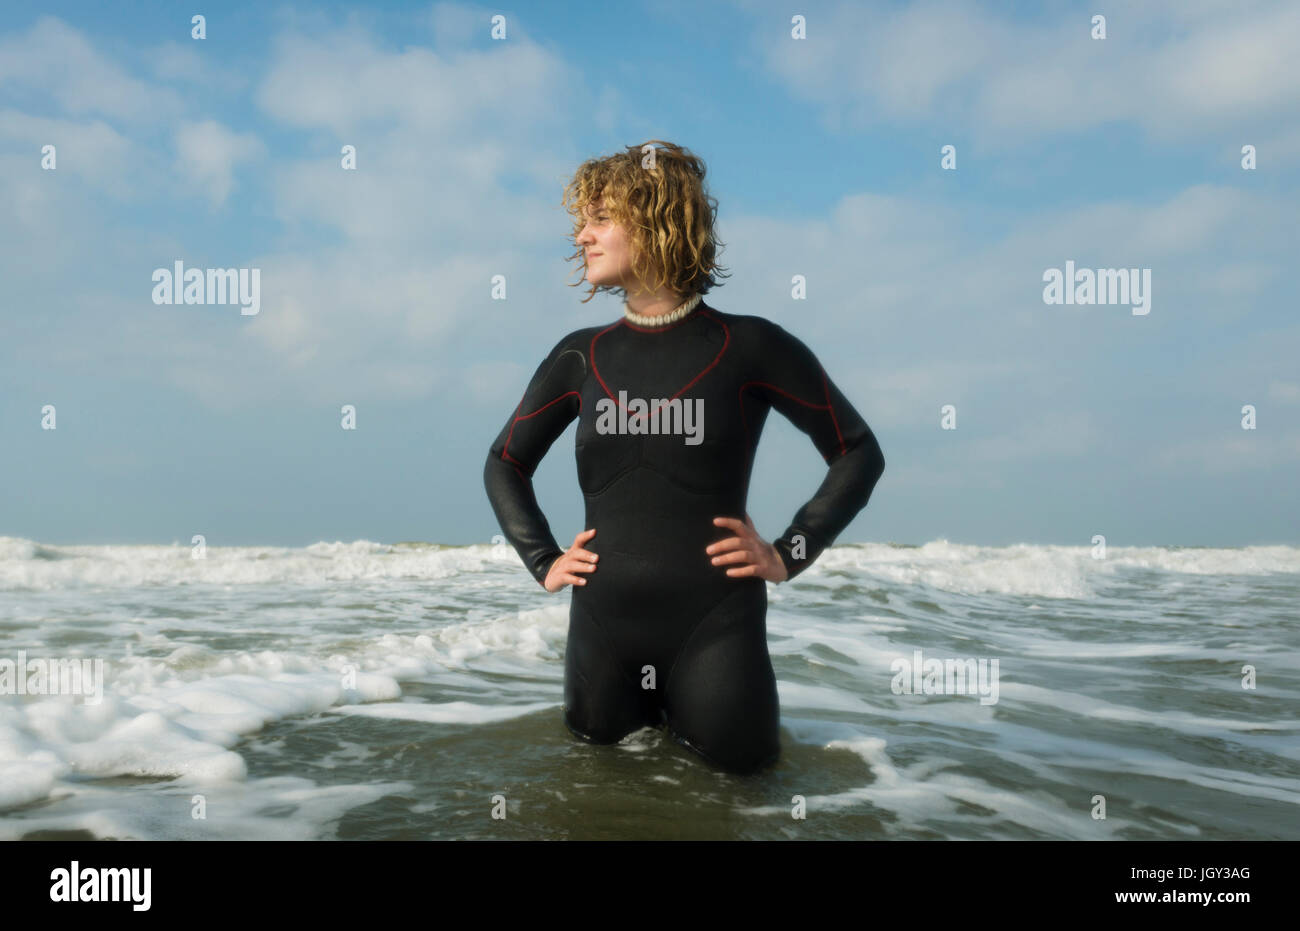 Fille debout dans la mer du Nord wearing wetsuit Banque D'Images